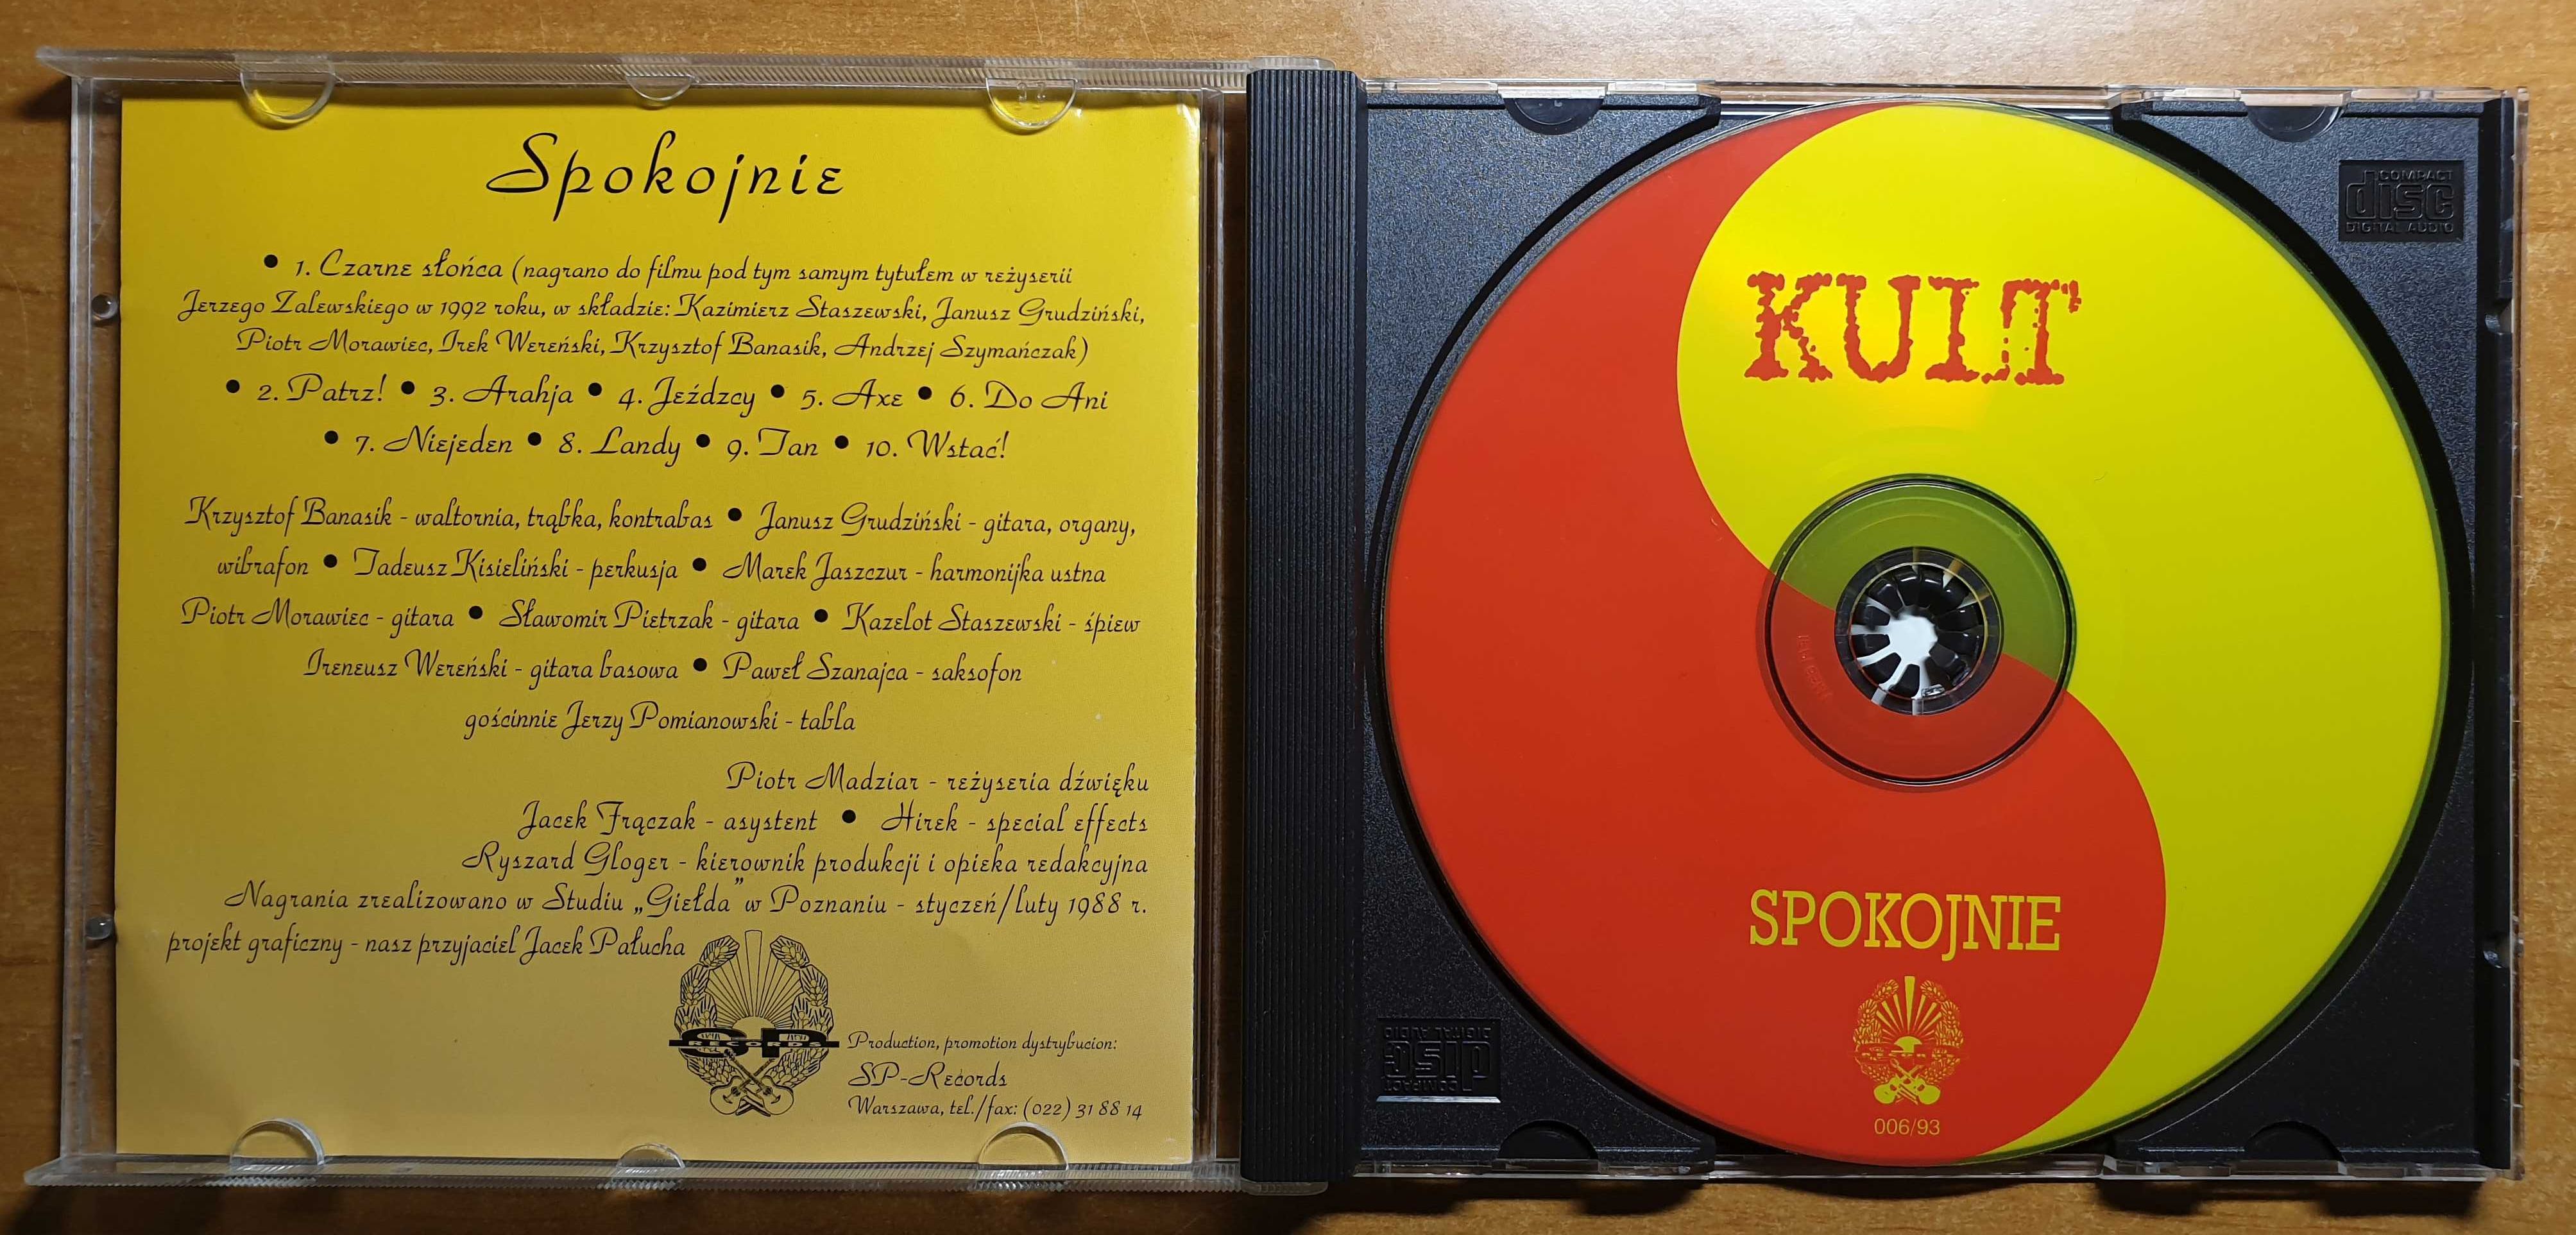 KULT Spokojnie płyta audio CD (Kazik Staszewski) reed z ok. 96-97